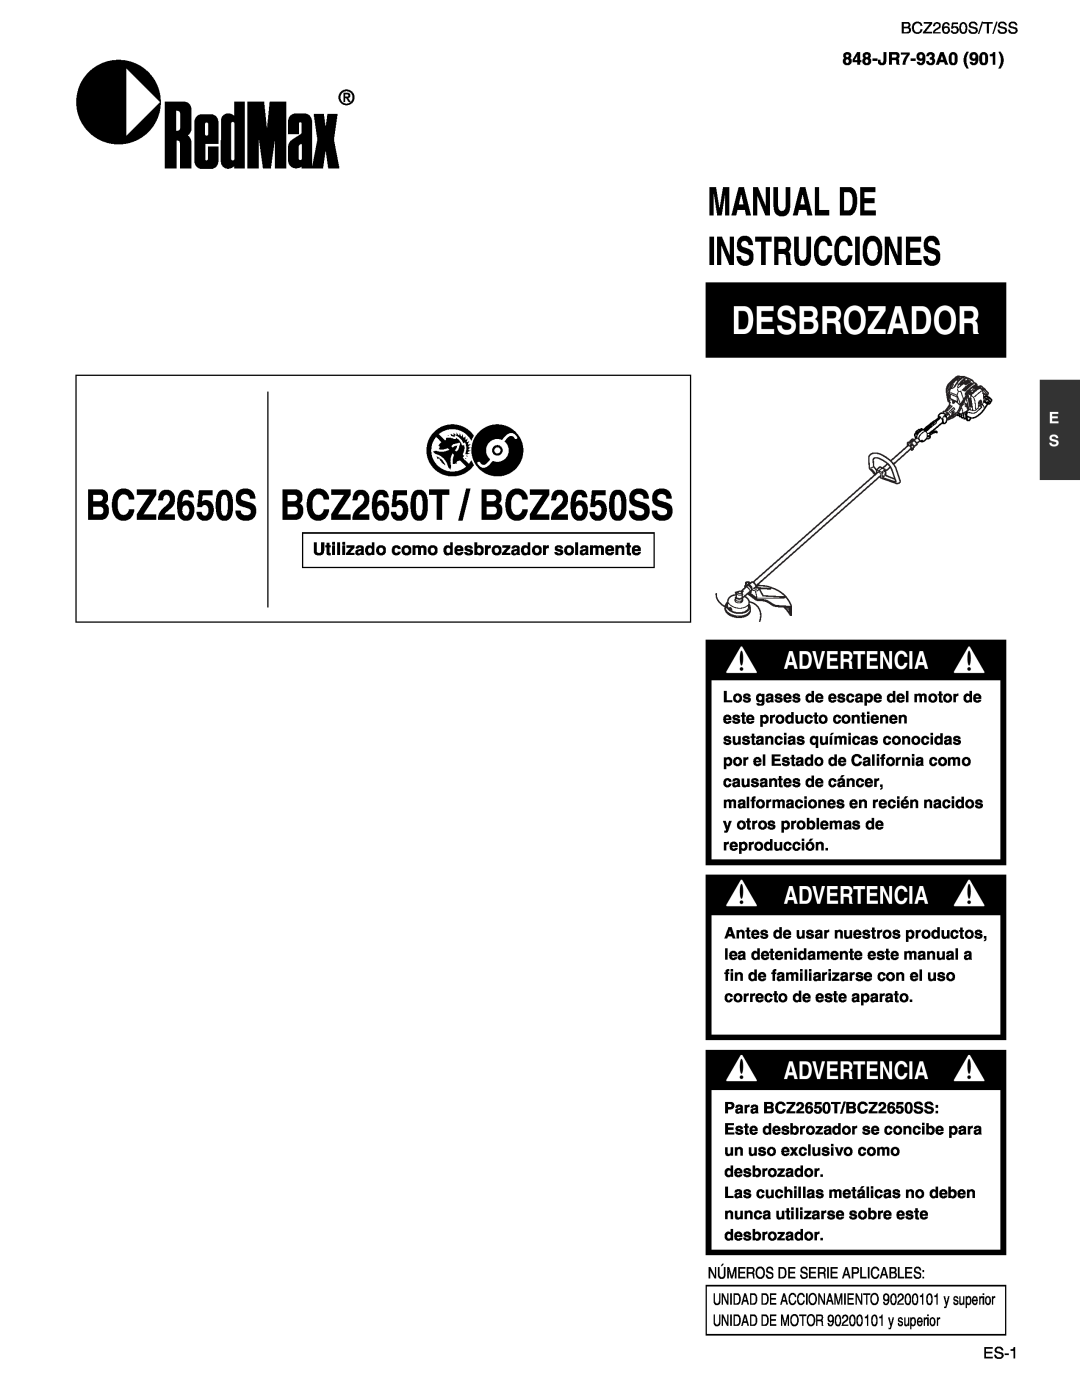 RedMax manual Desbrozador, Manual De Instrucciones, BCZ2650S BCZ2650T / BCZ2650SS, Advertencia, 848-JR7-93A0901 